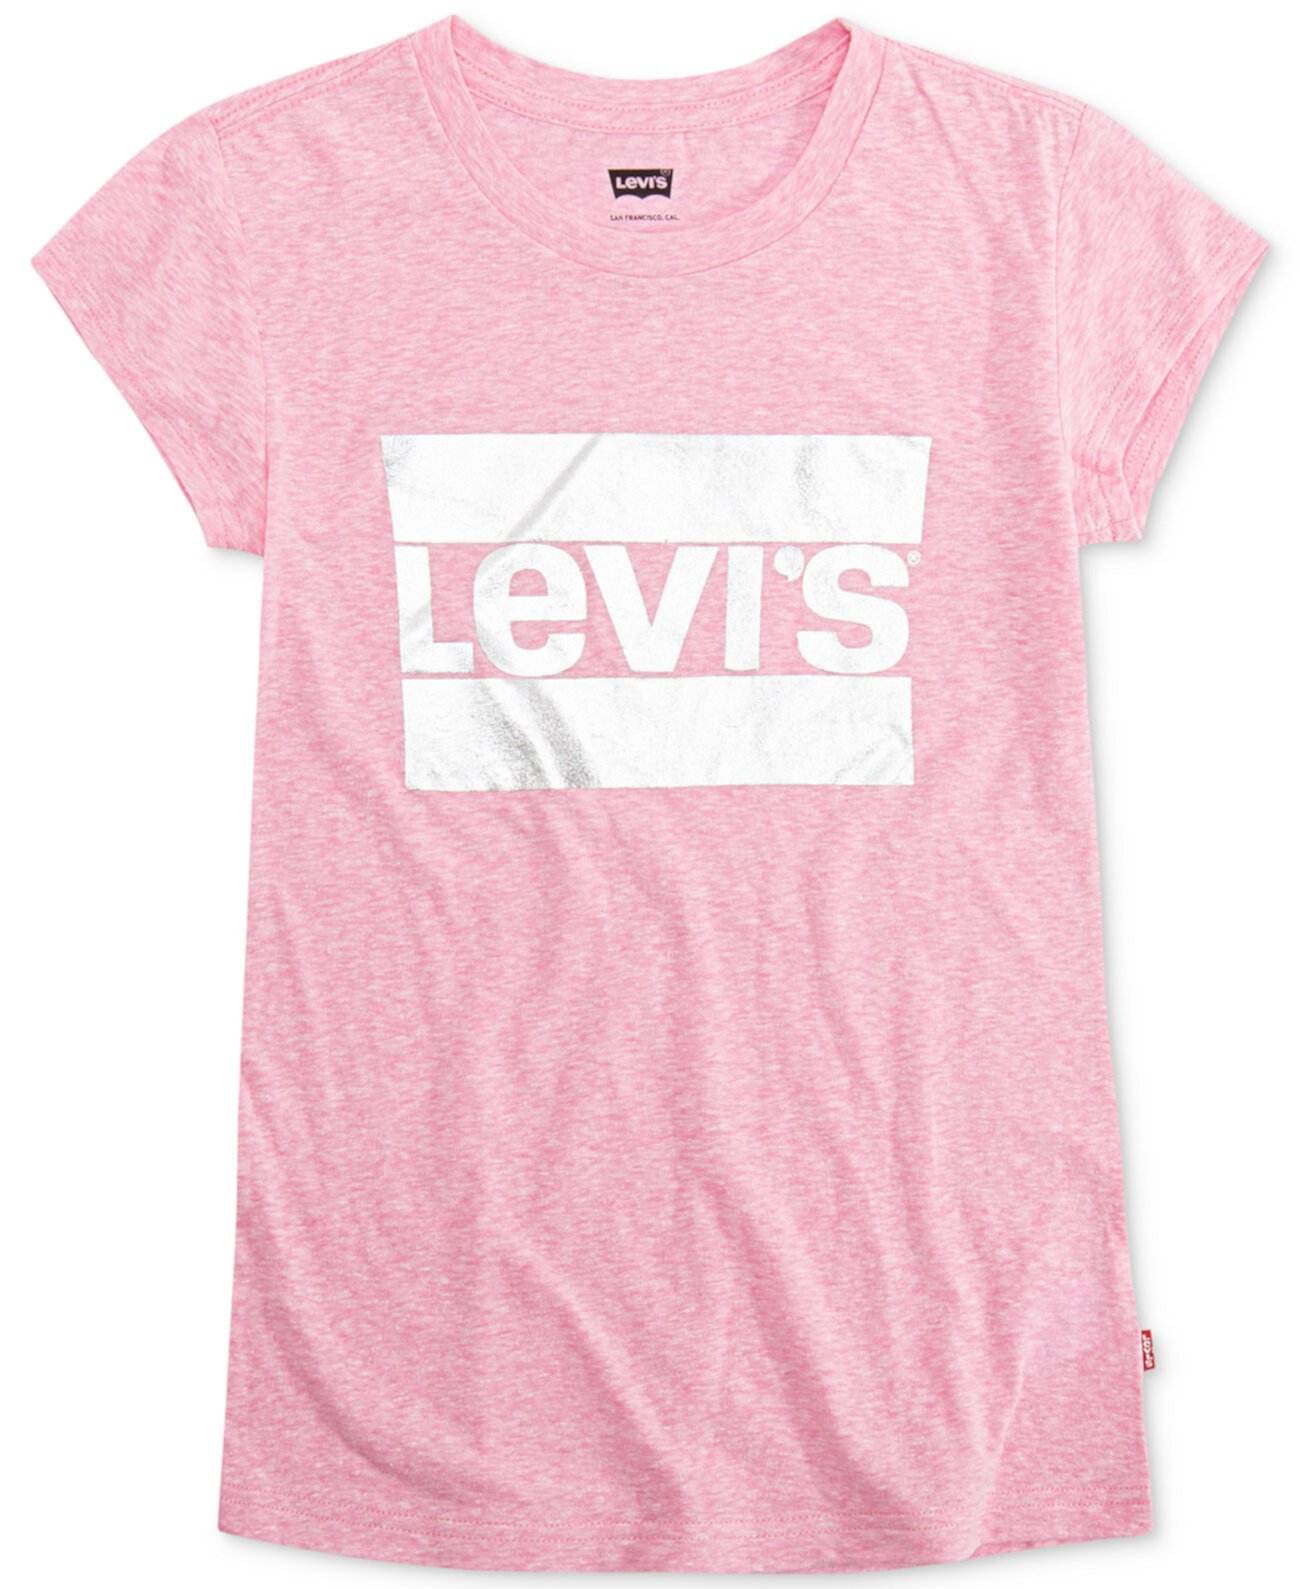 Хлопковая футболка с графическим принтом Little Girls Levi's®